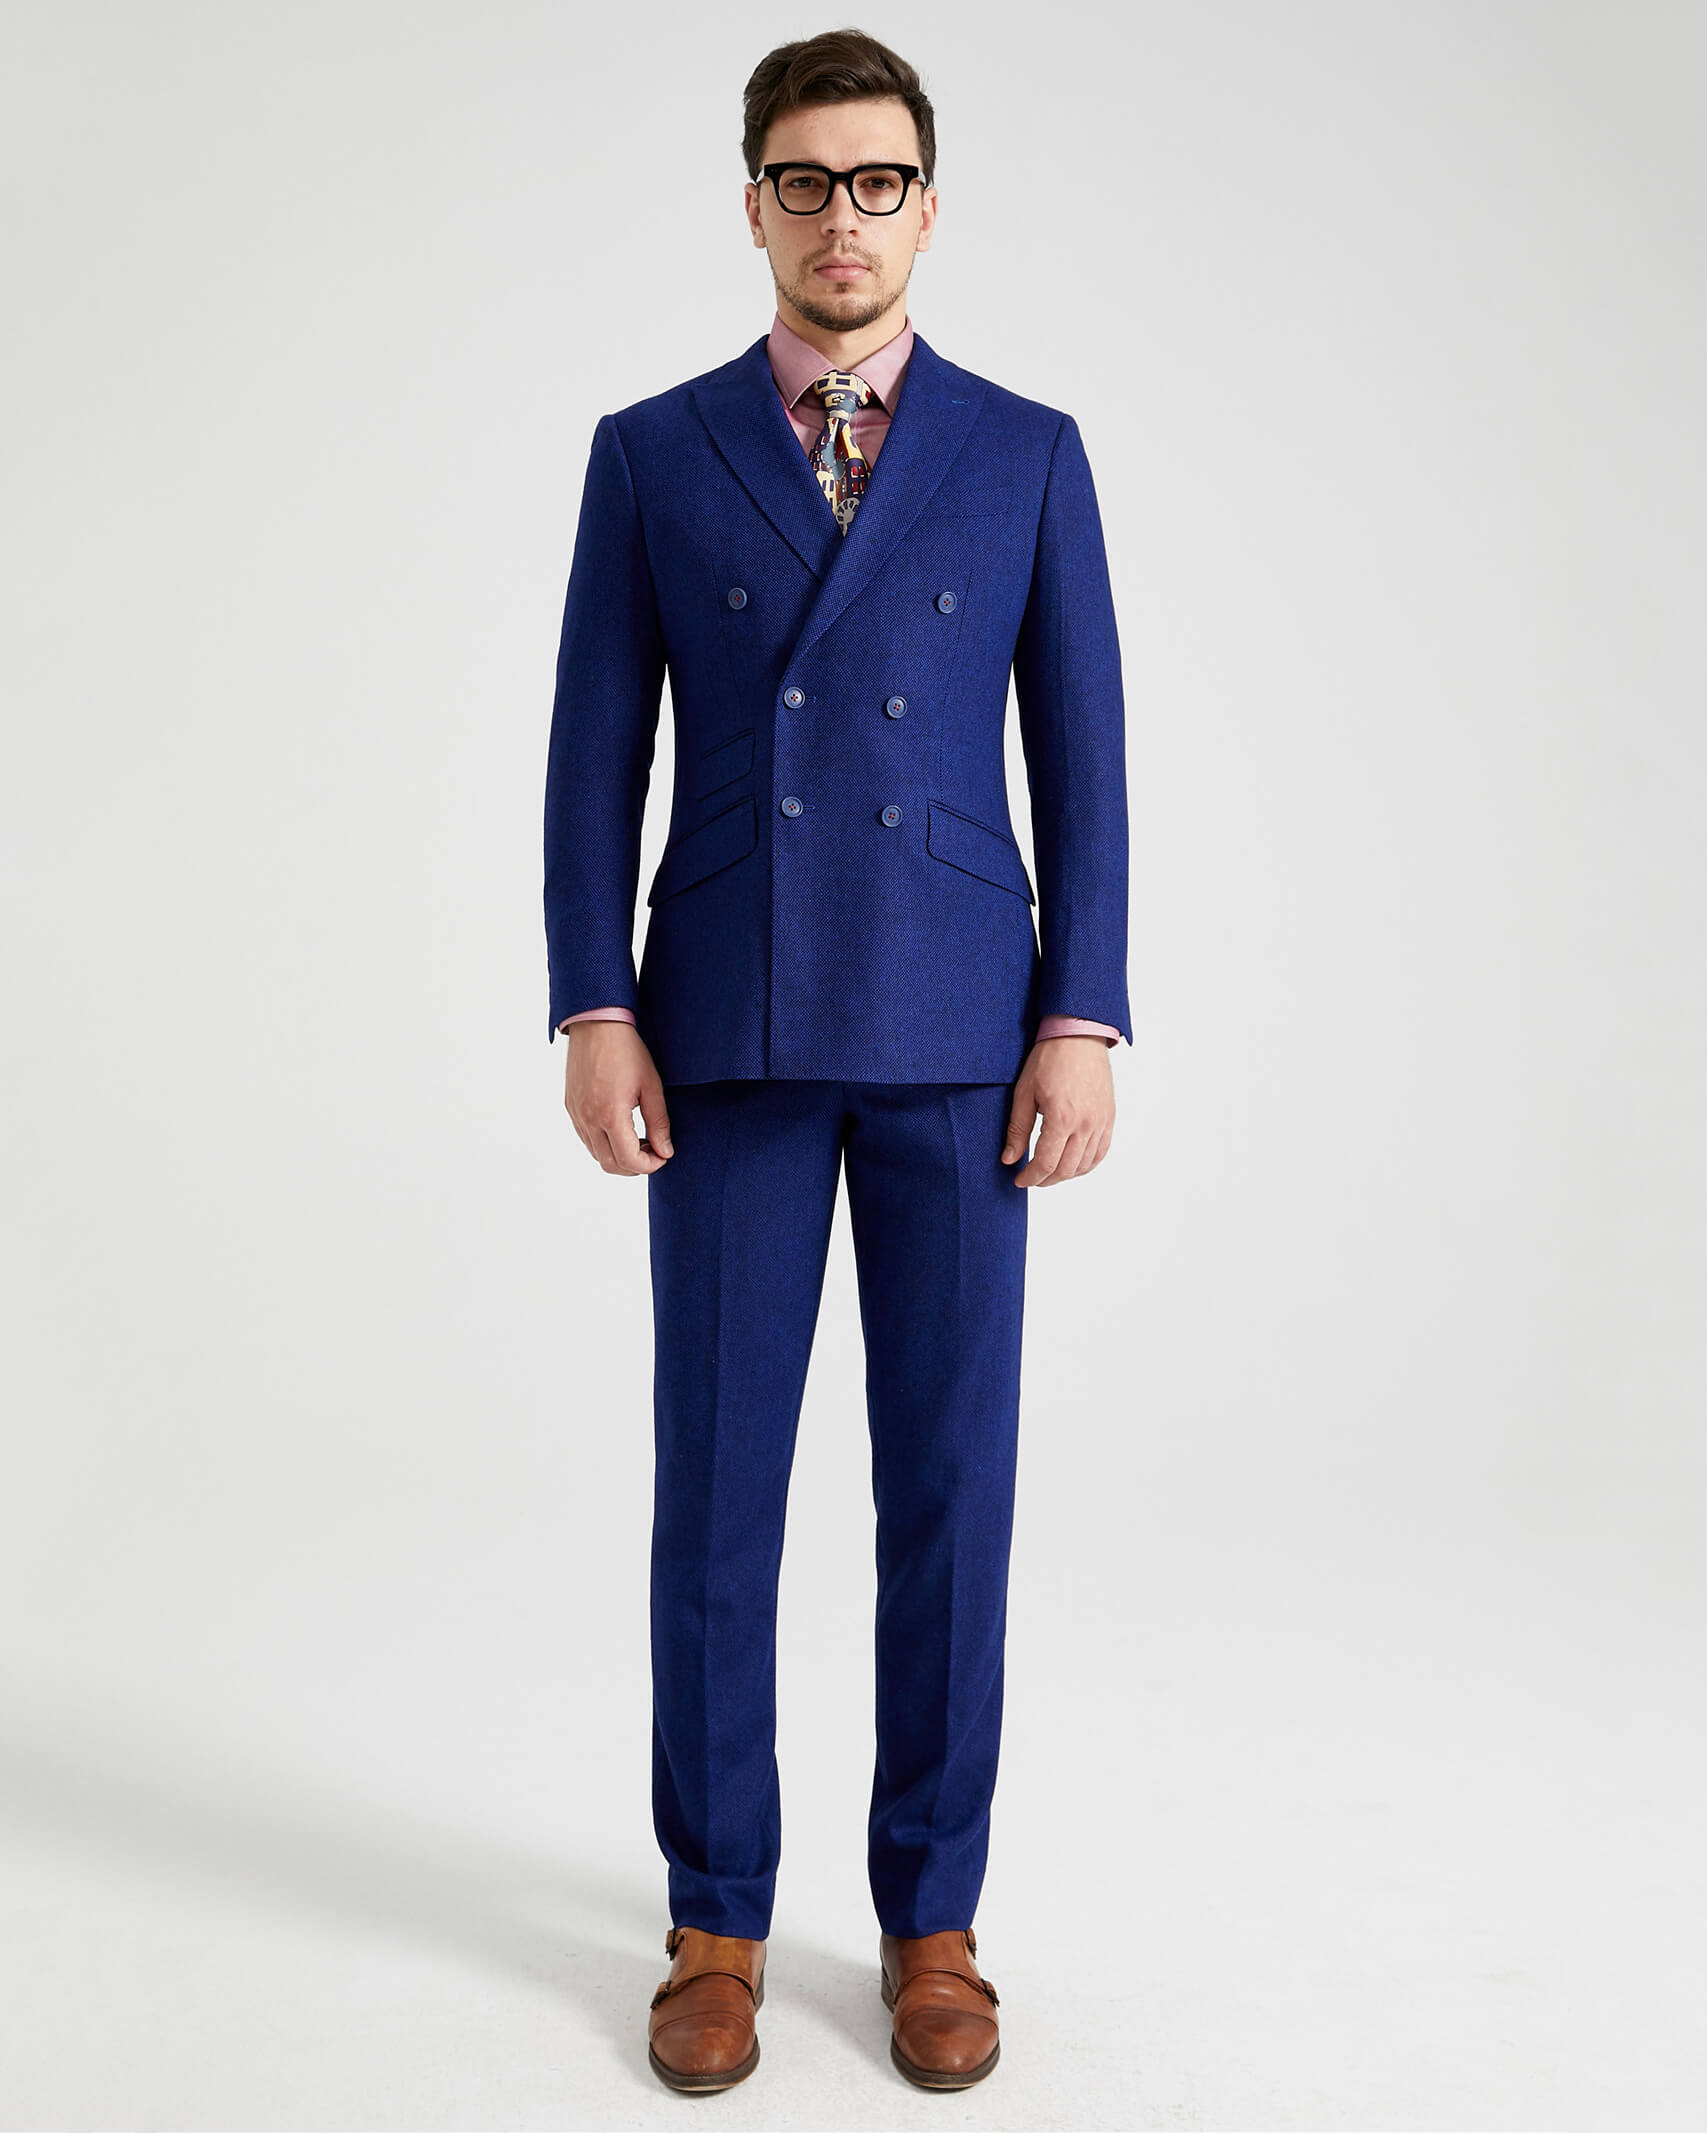 Royal Blue Heavy Tweed Suit